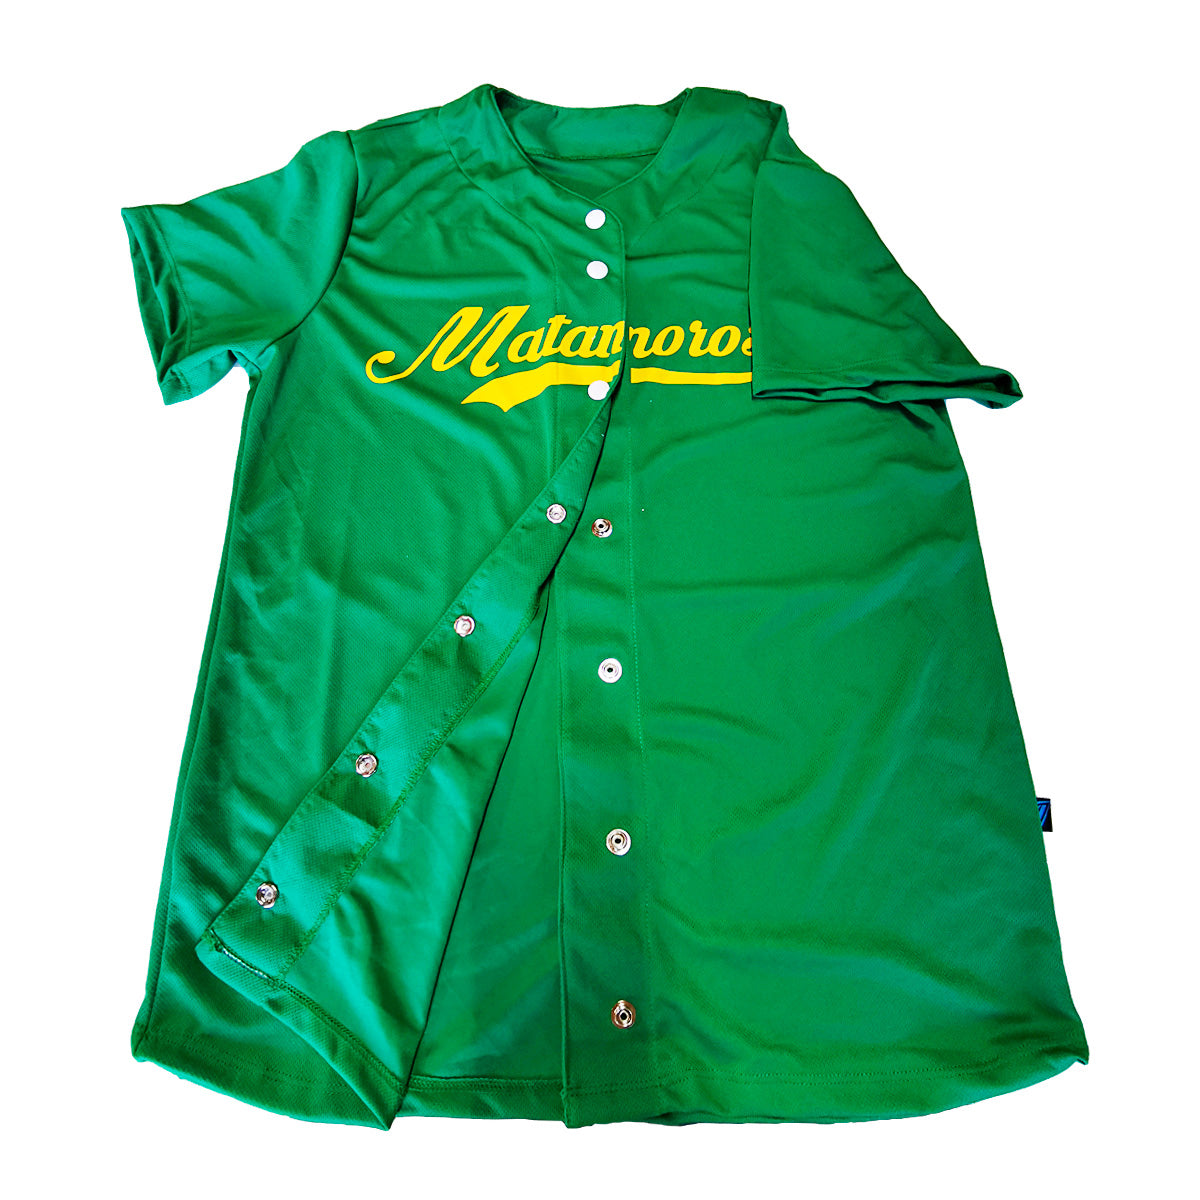 jersey beisbol camisola softbol personalizado verde hombre en guadalajara